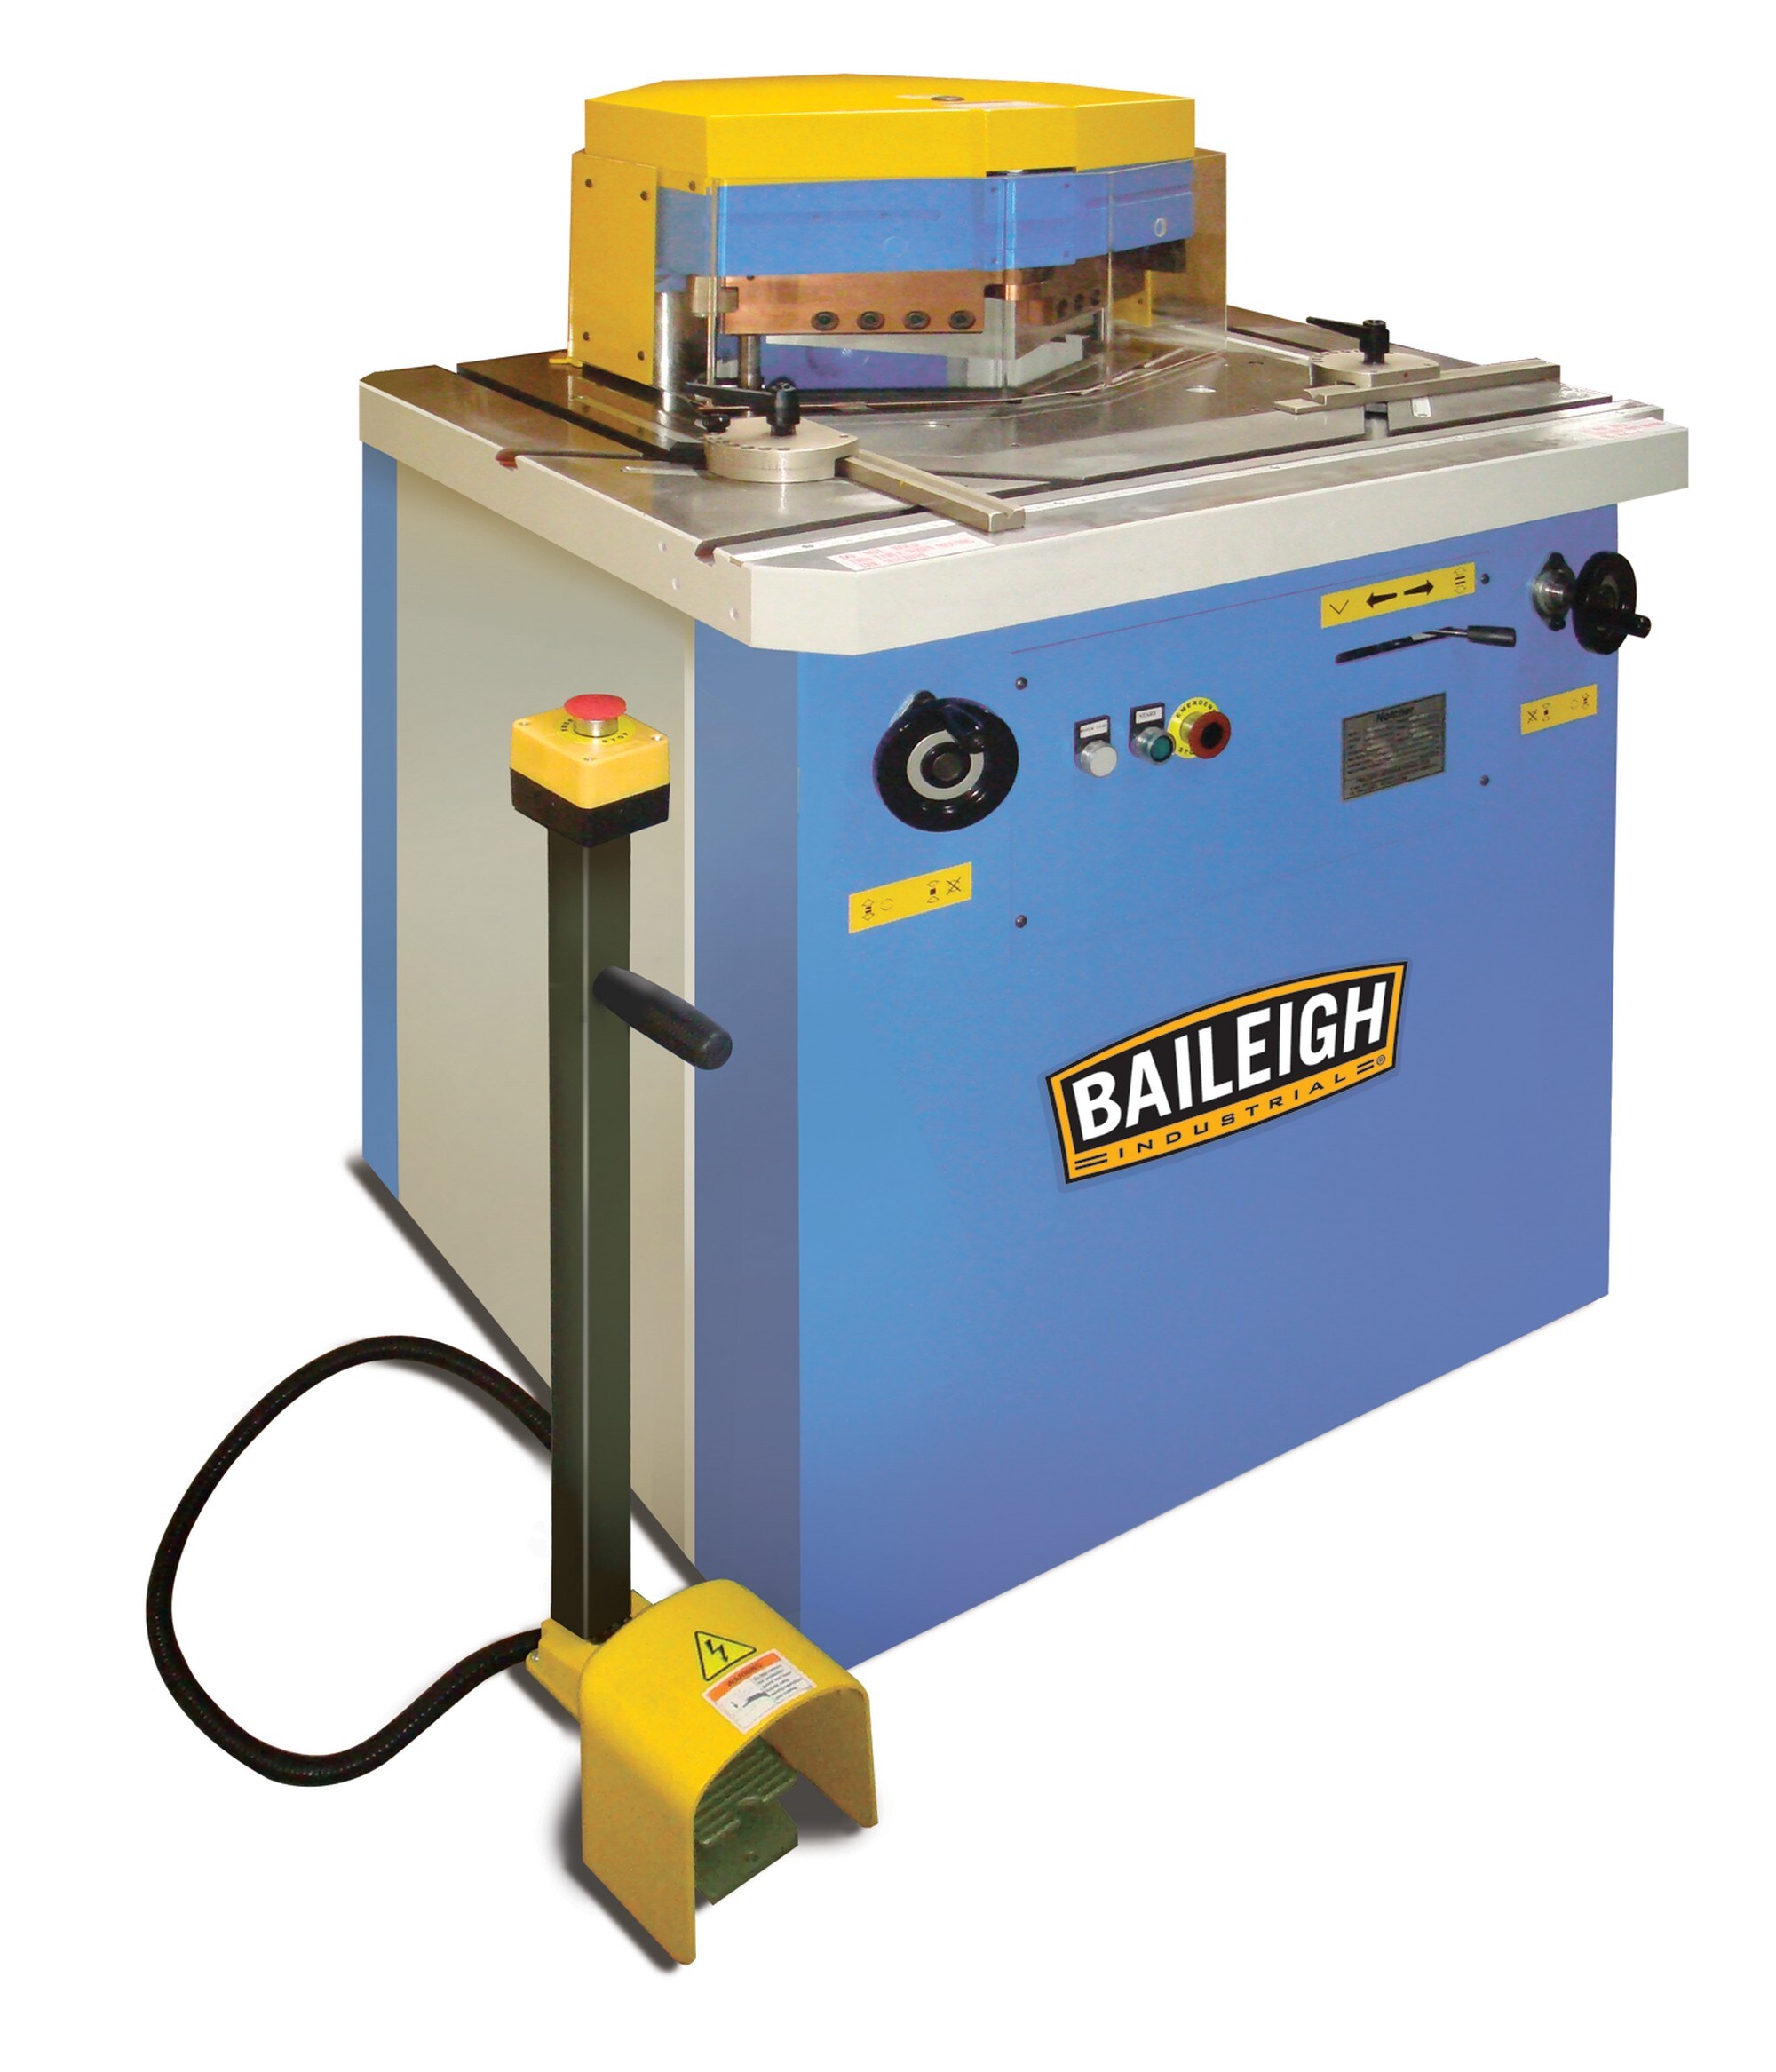 Baileigh Industrial 1007269